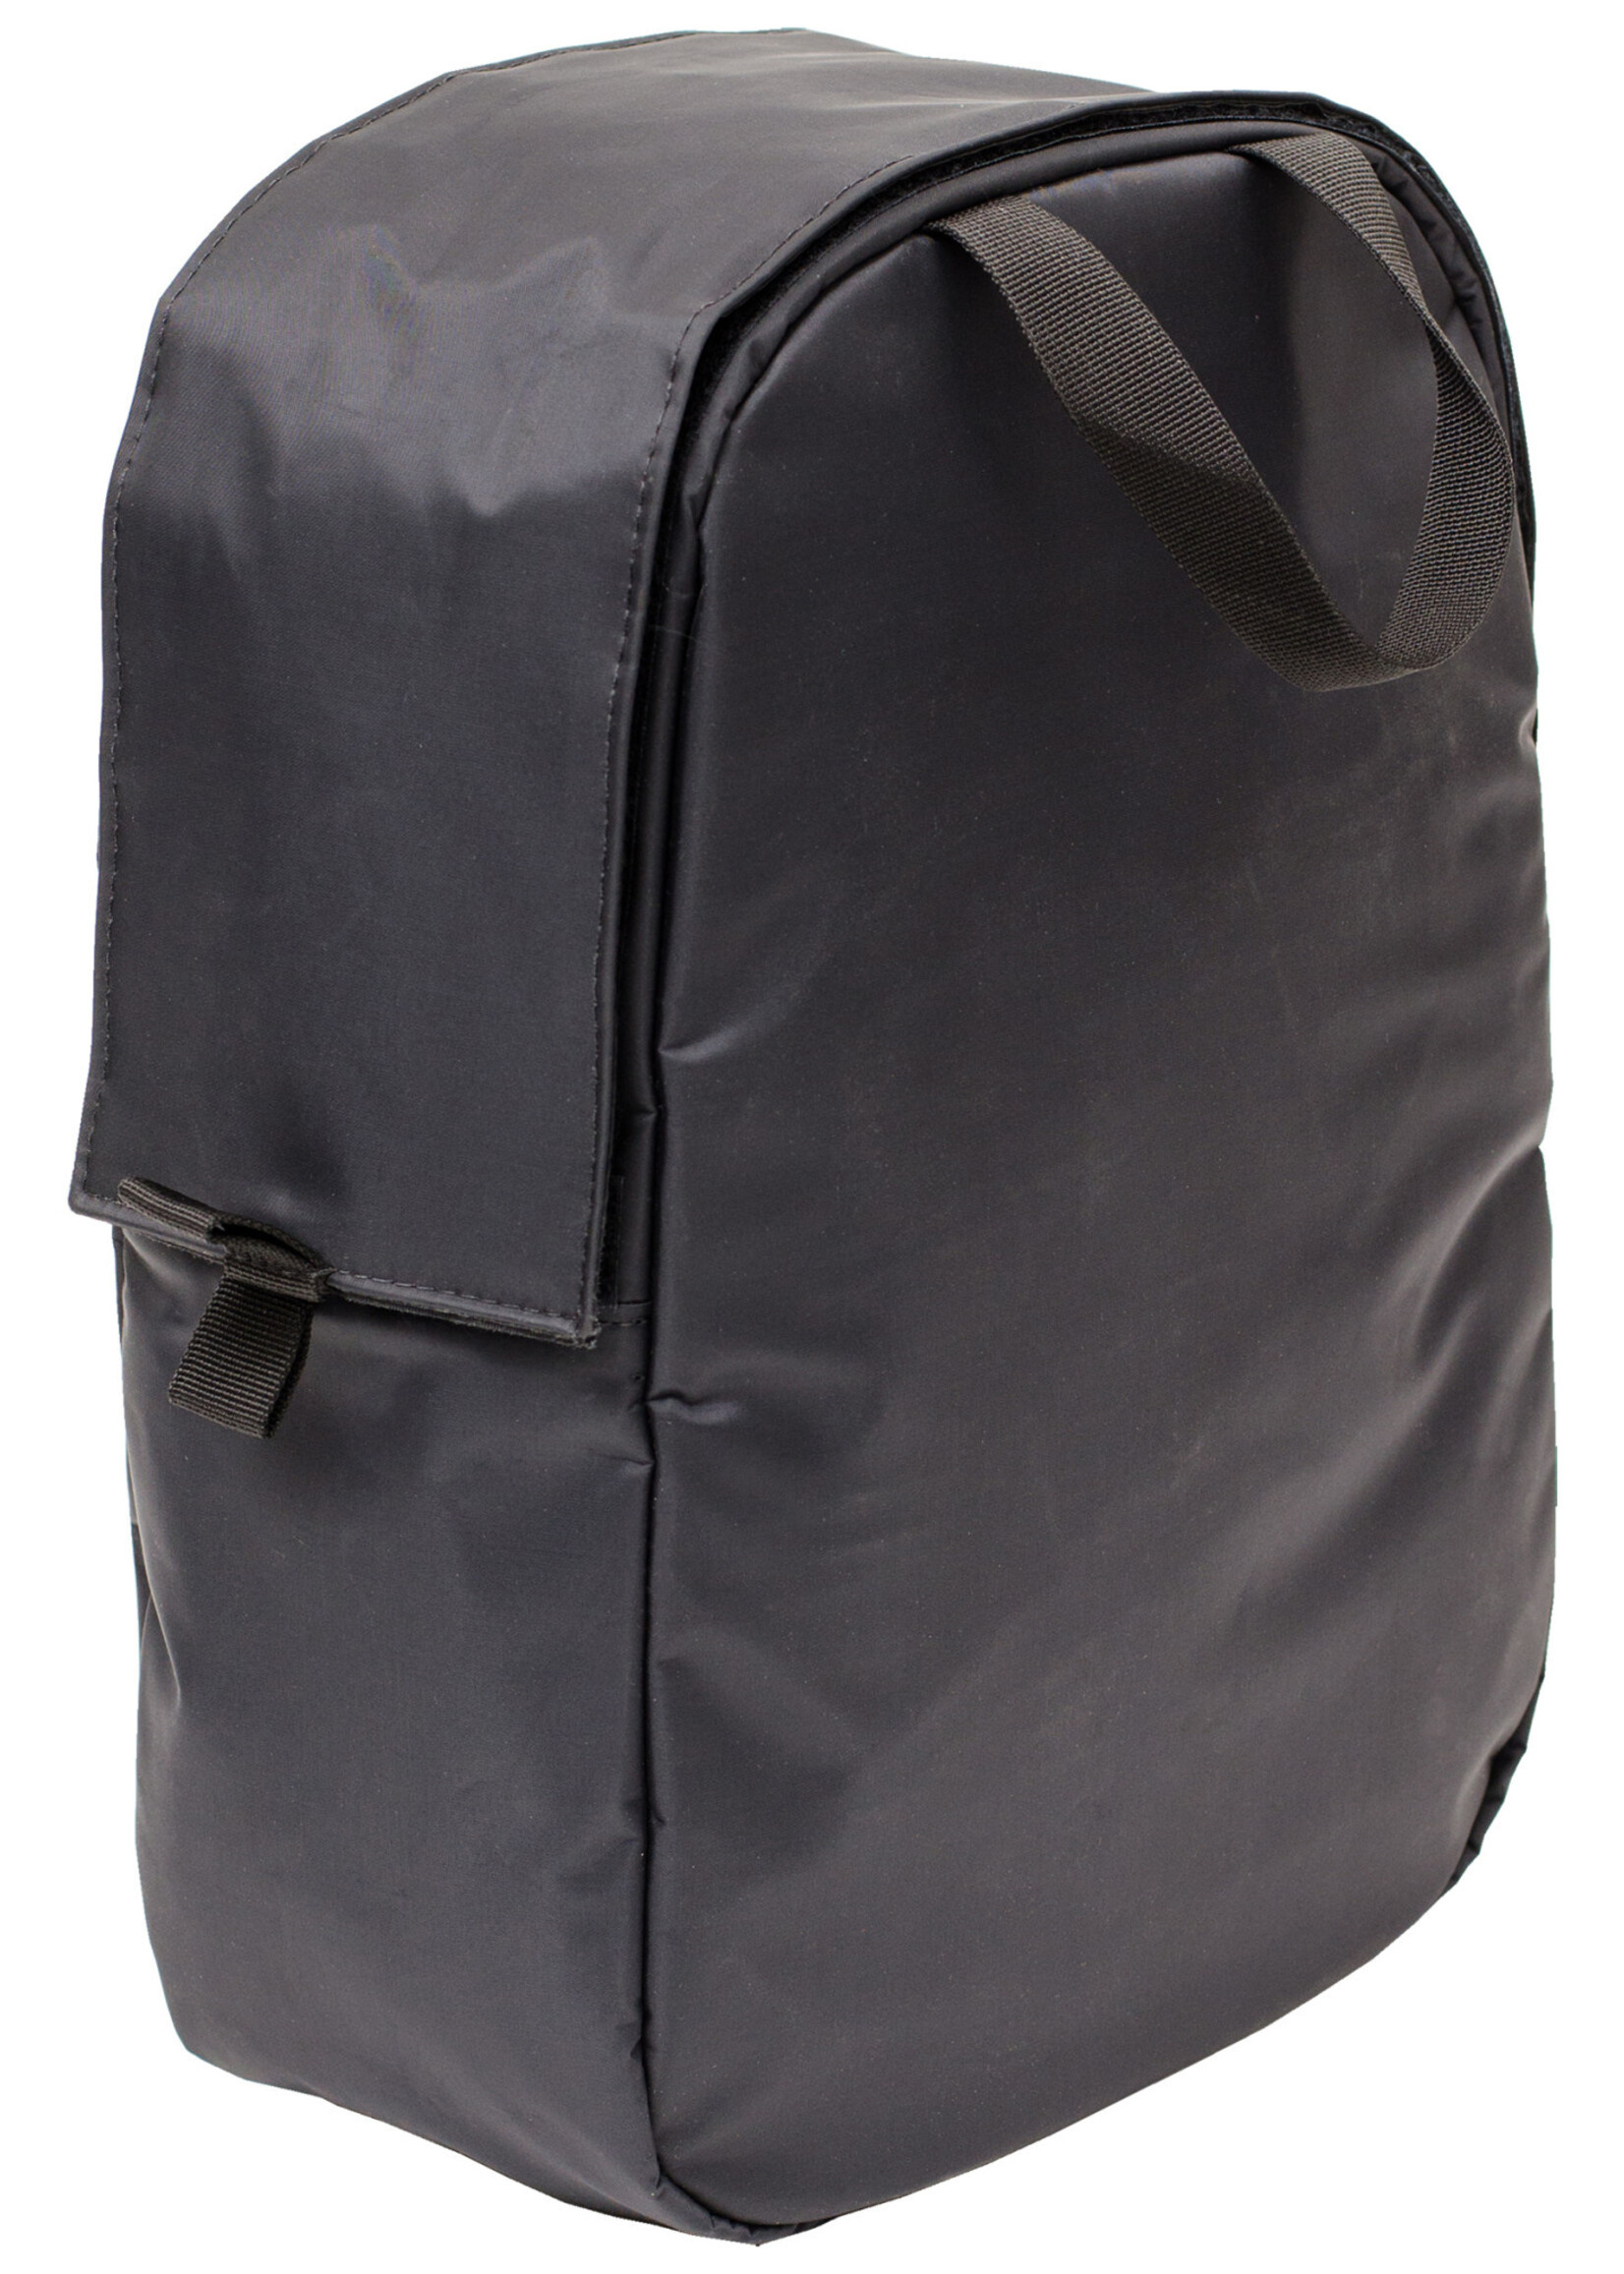 Abscent Abscent Backpack Insert - Black